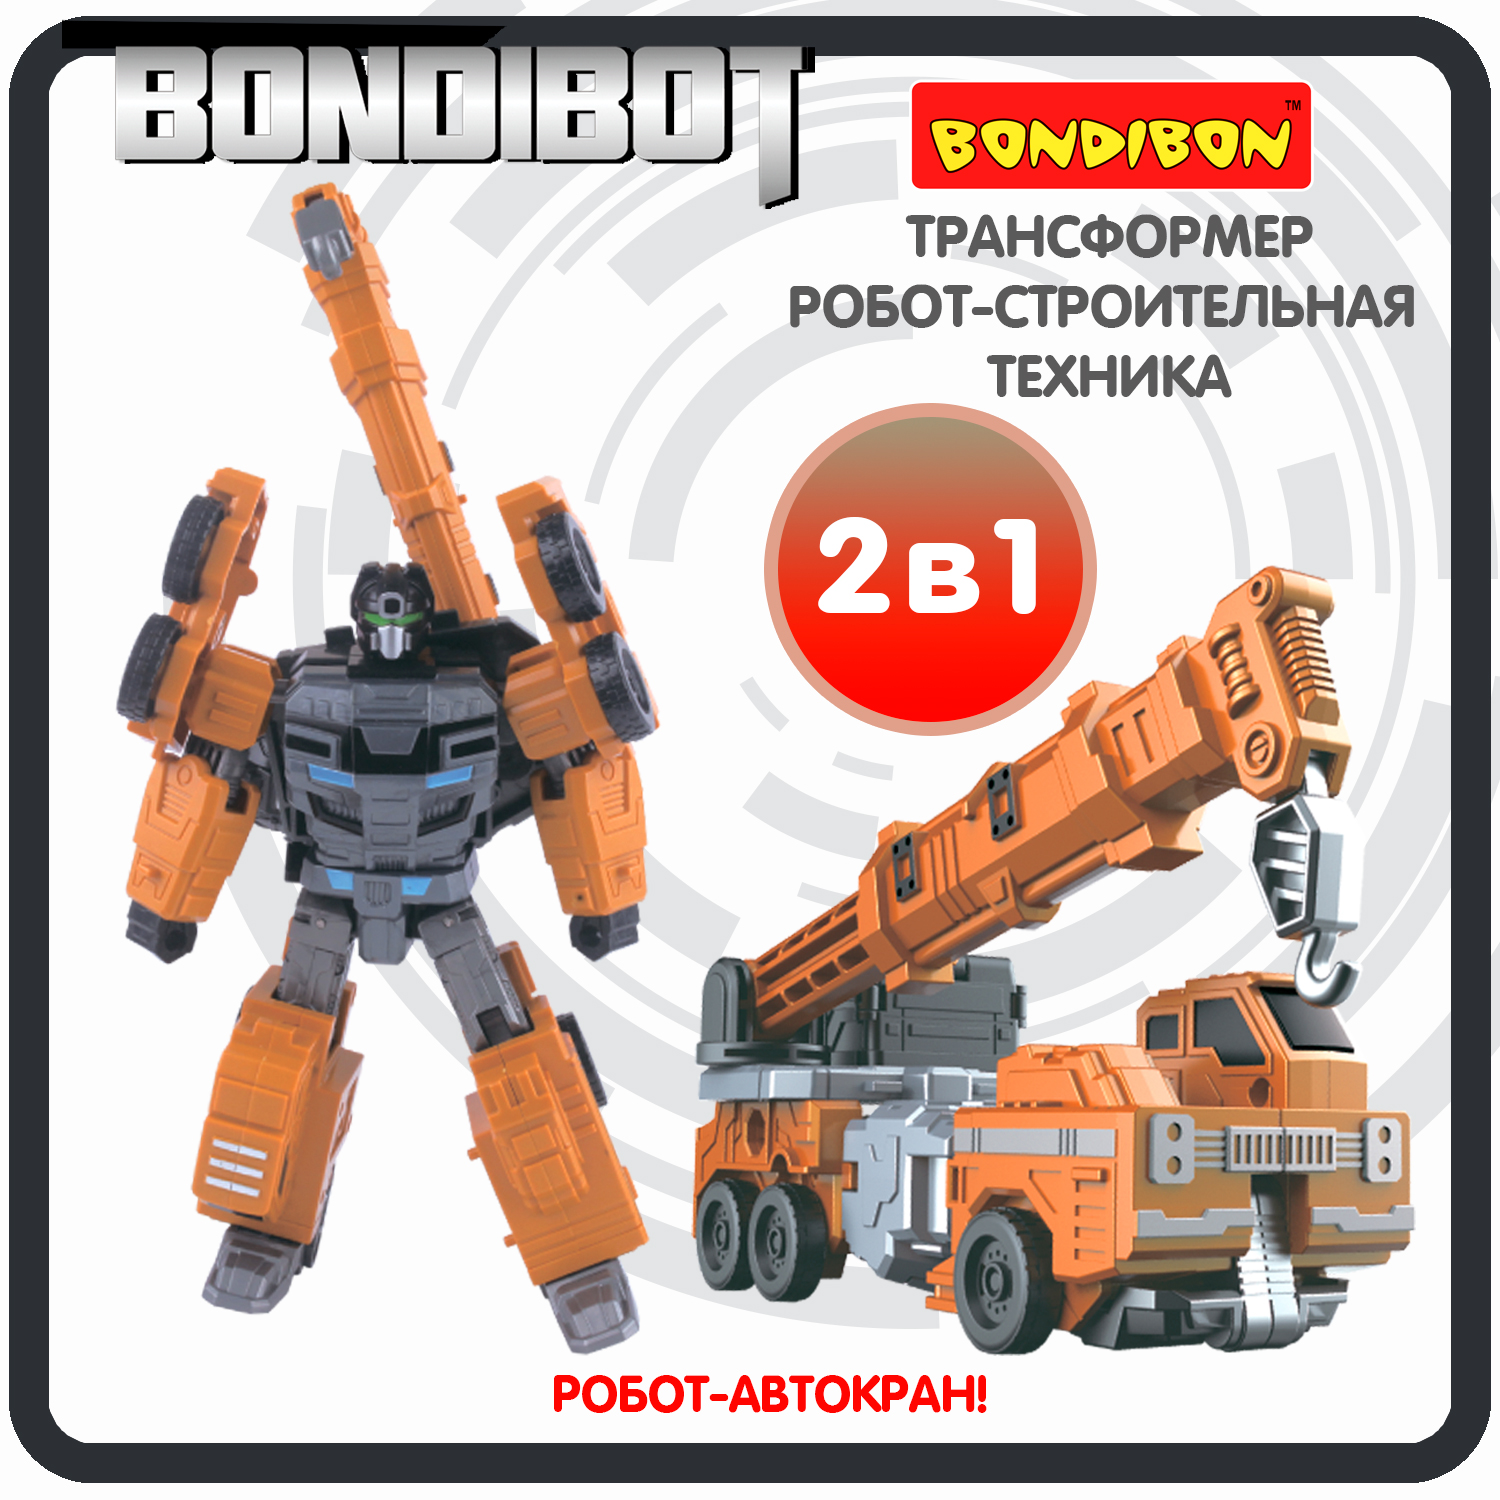 Трансформер робот-строительная техника, 2в1 BONDIBOT Bondibon, автокран / ВВ6056 игрушка трансформер тобот 5 серии робот машинка 2 в 1